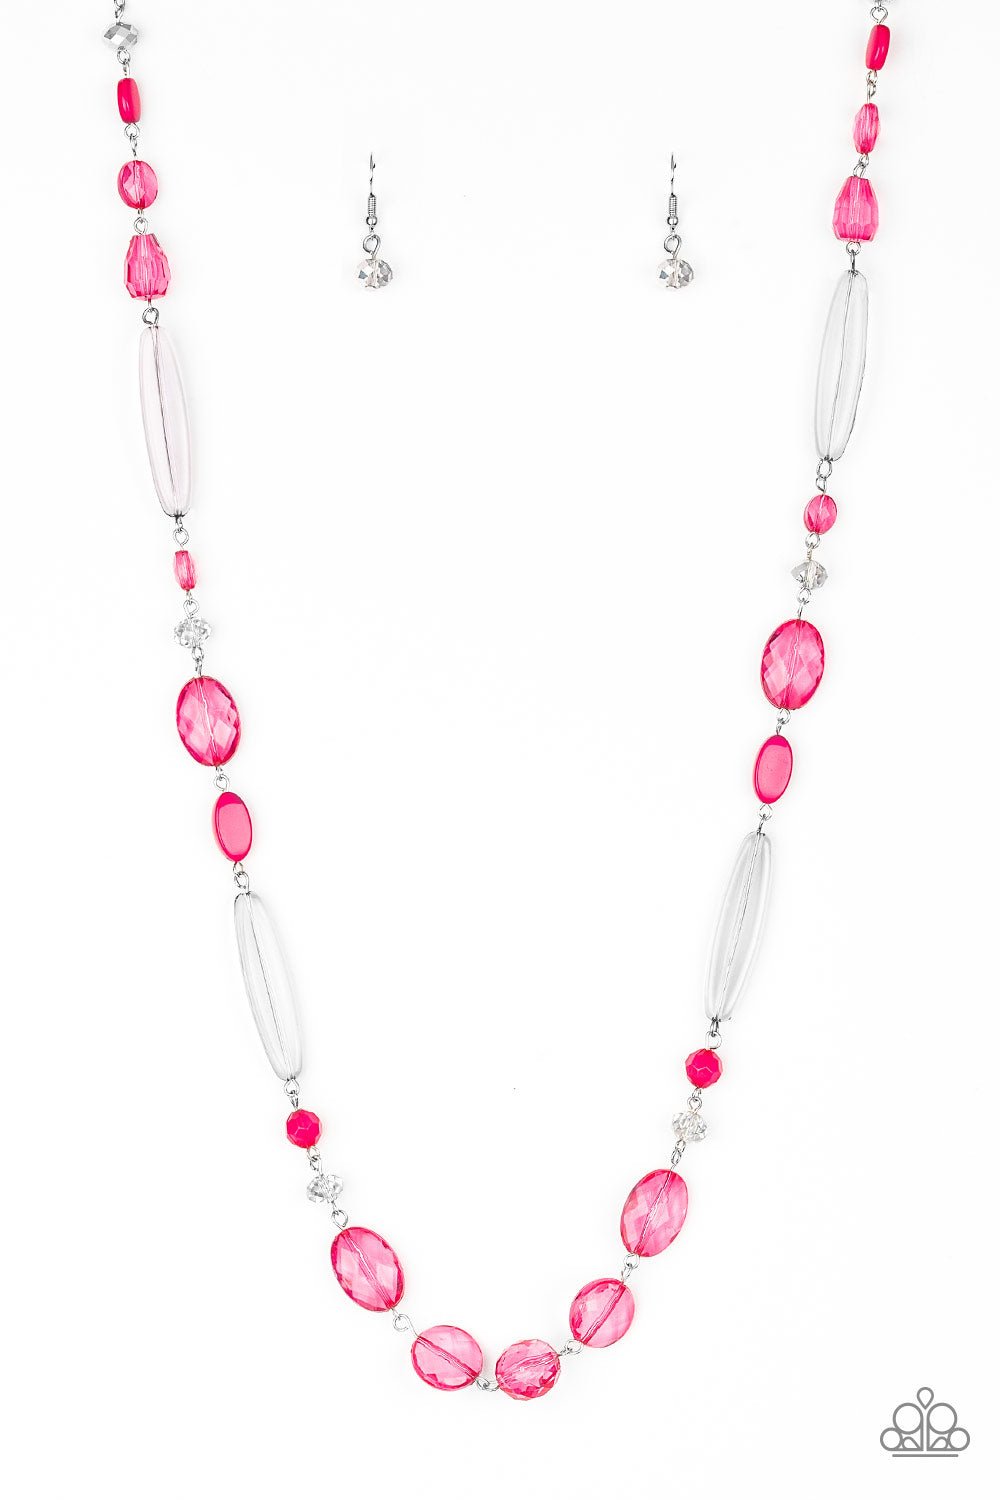 Quite Quintessence Pink Paparazzi Necklaces Cashmere Pink Jewels - Cashmere Pink Jewels & Accessories, Cashmere Pink Jewels & Accessories - Paparazzi